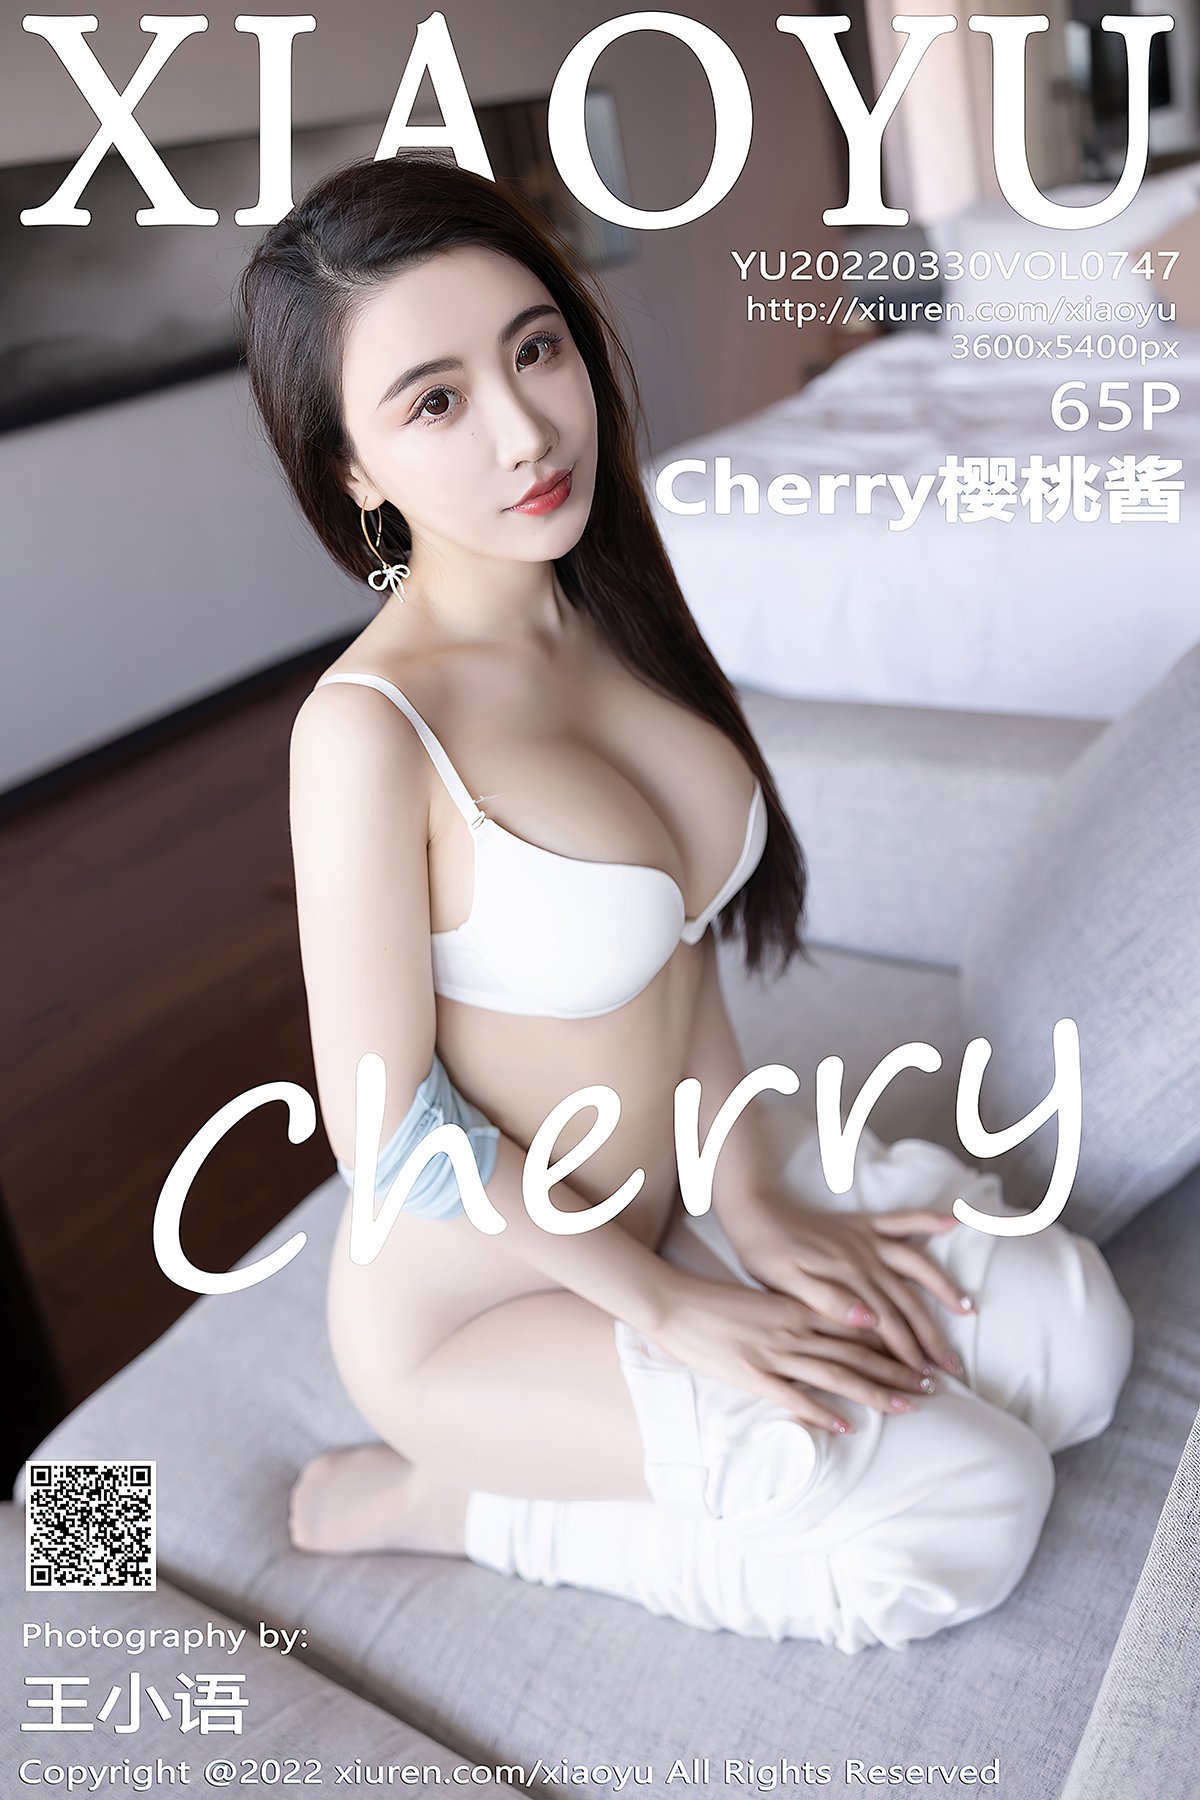 XiaoYu语画界 Vol.747 Cherry Ying Tao Jiang